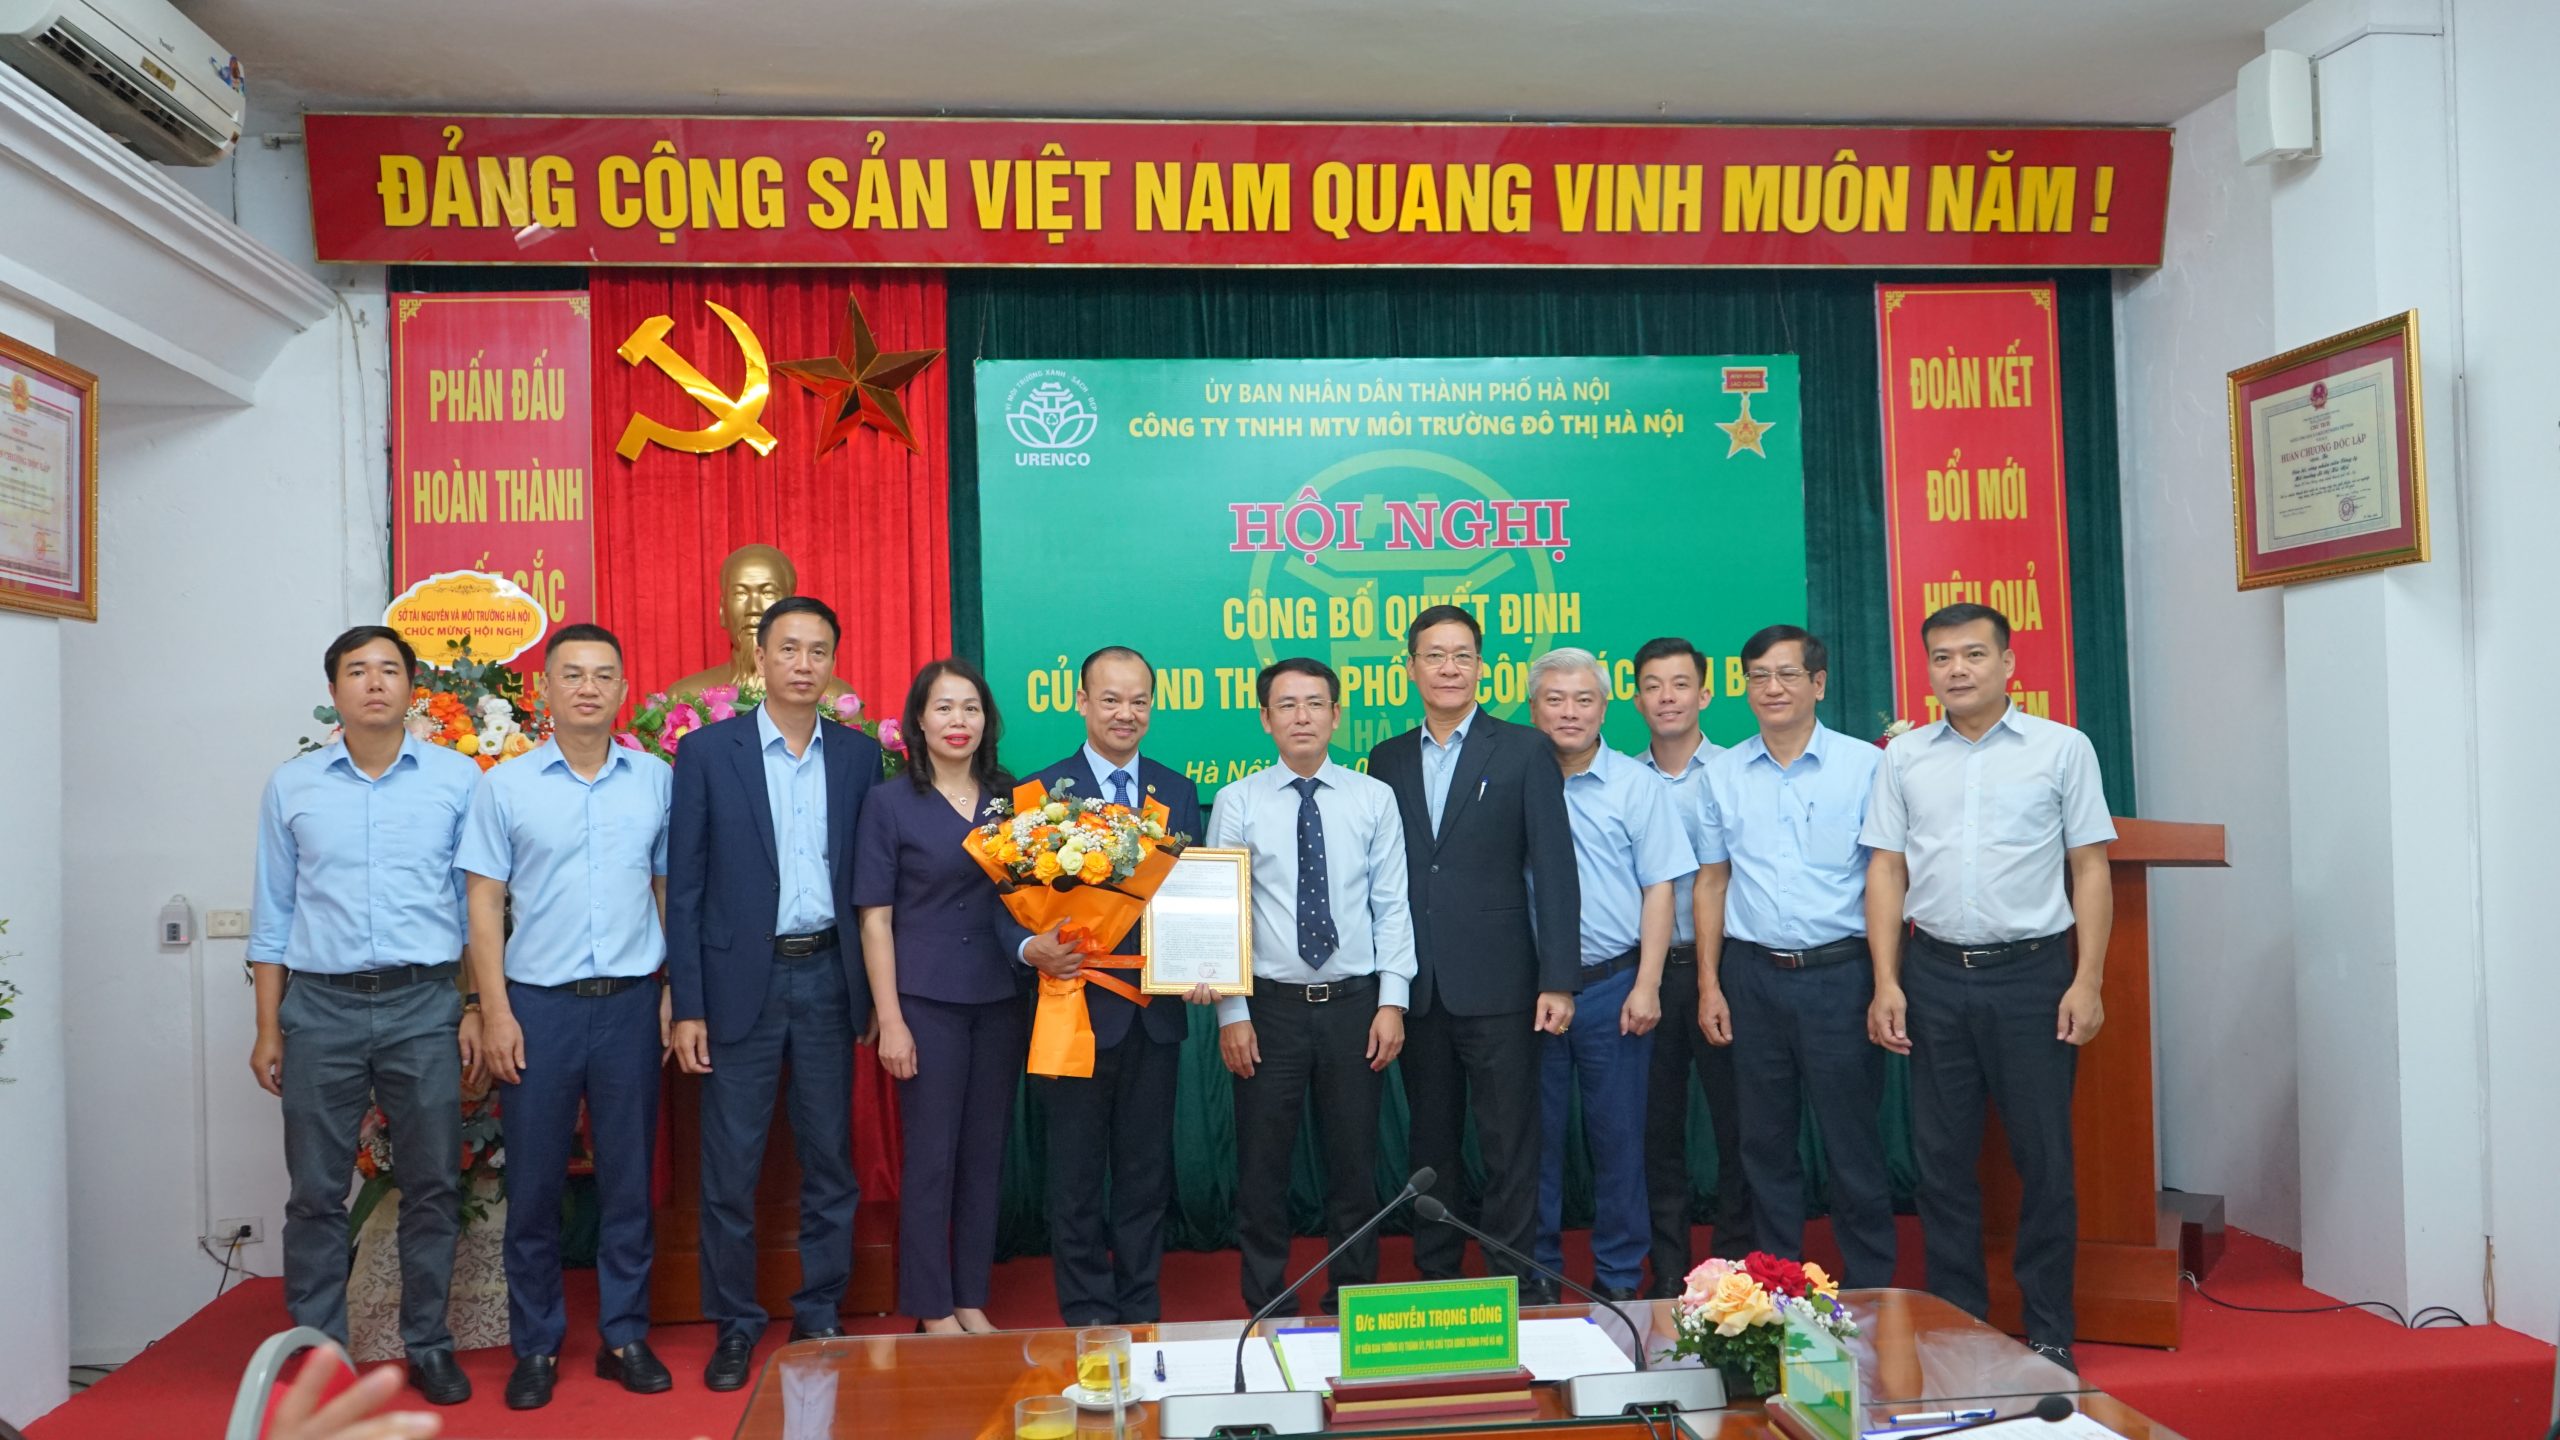 Lãnh đạo thành phố Hà Nội chúc mừng lãnh đạo Công ty TNHH MTV Môi trường đô thị Hà Nội vừa được bổ nhiệm, phân công